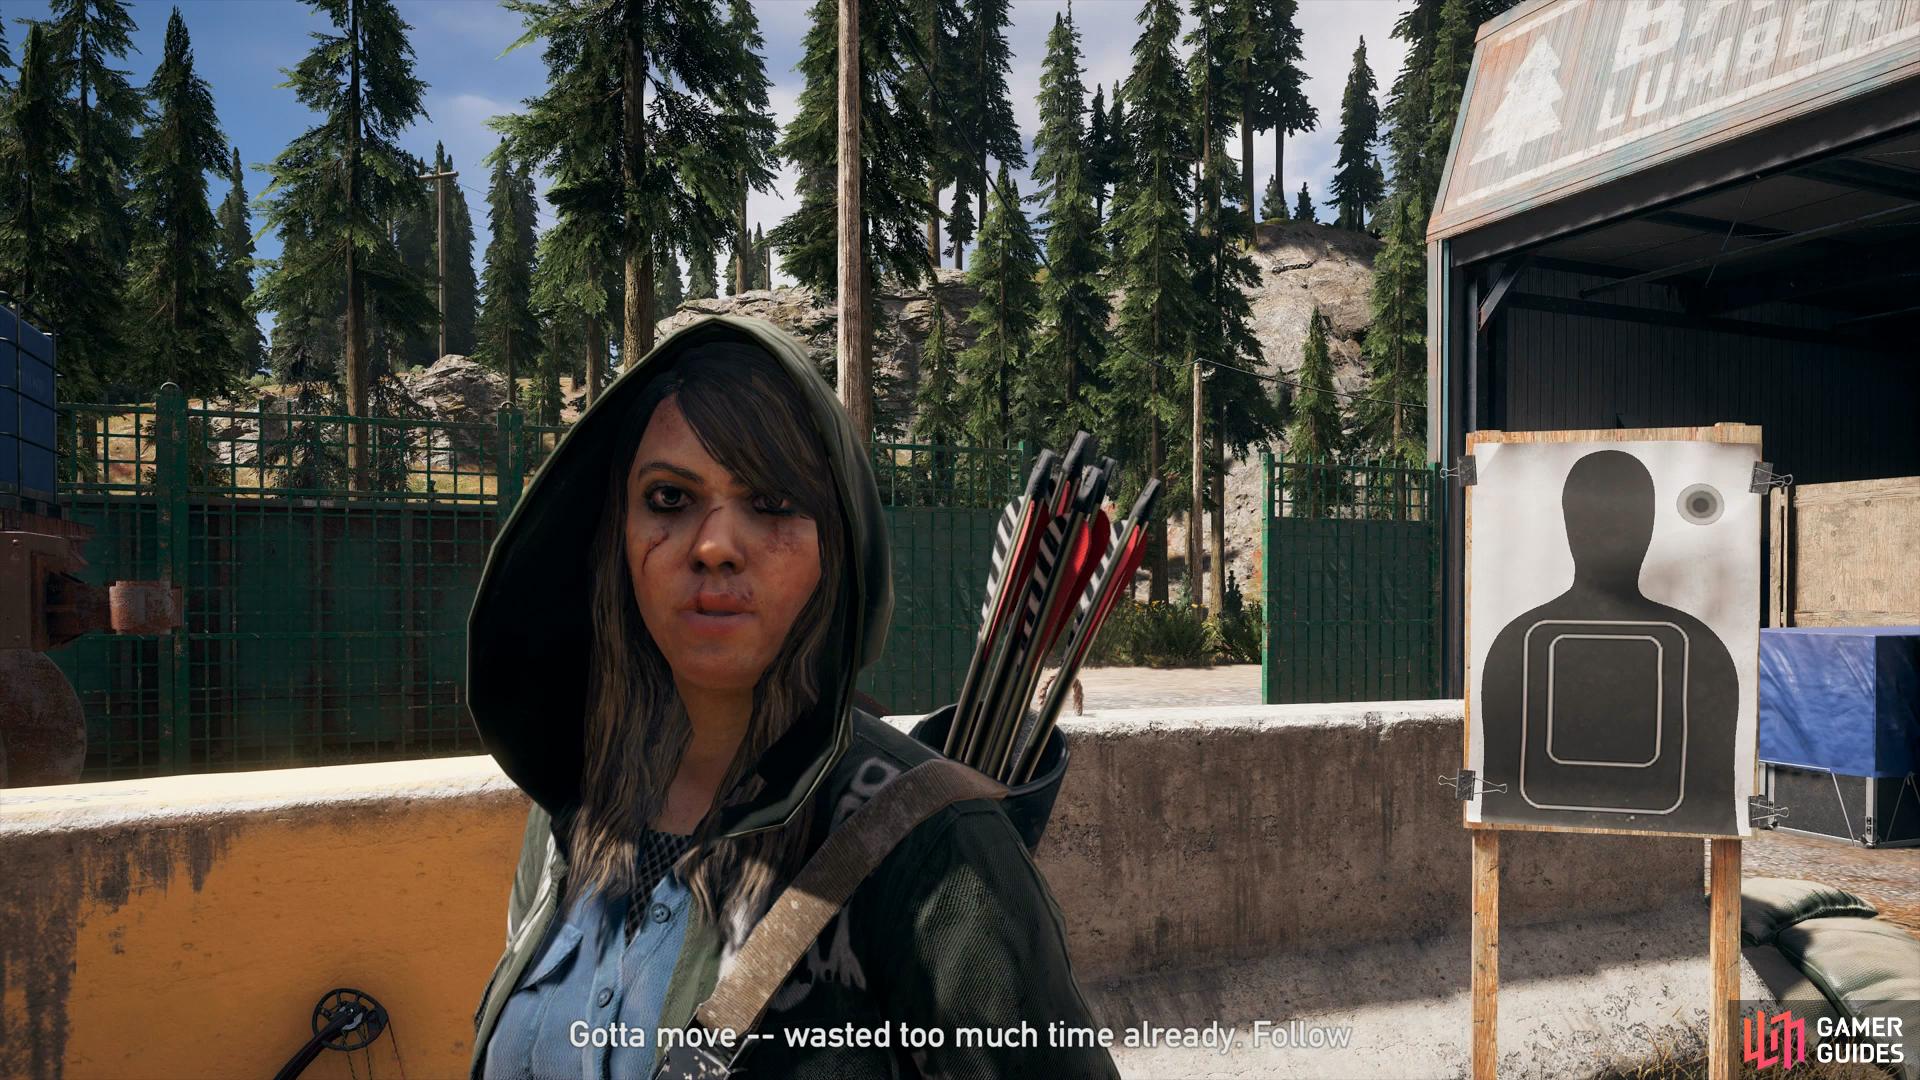 SPYmaps - Kill Hotel owner mod for Far Cry 5 - Mod DB